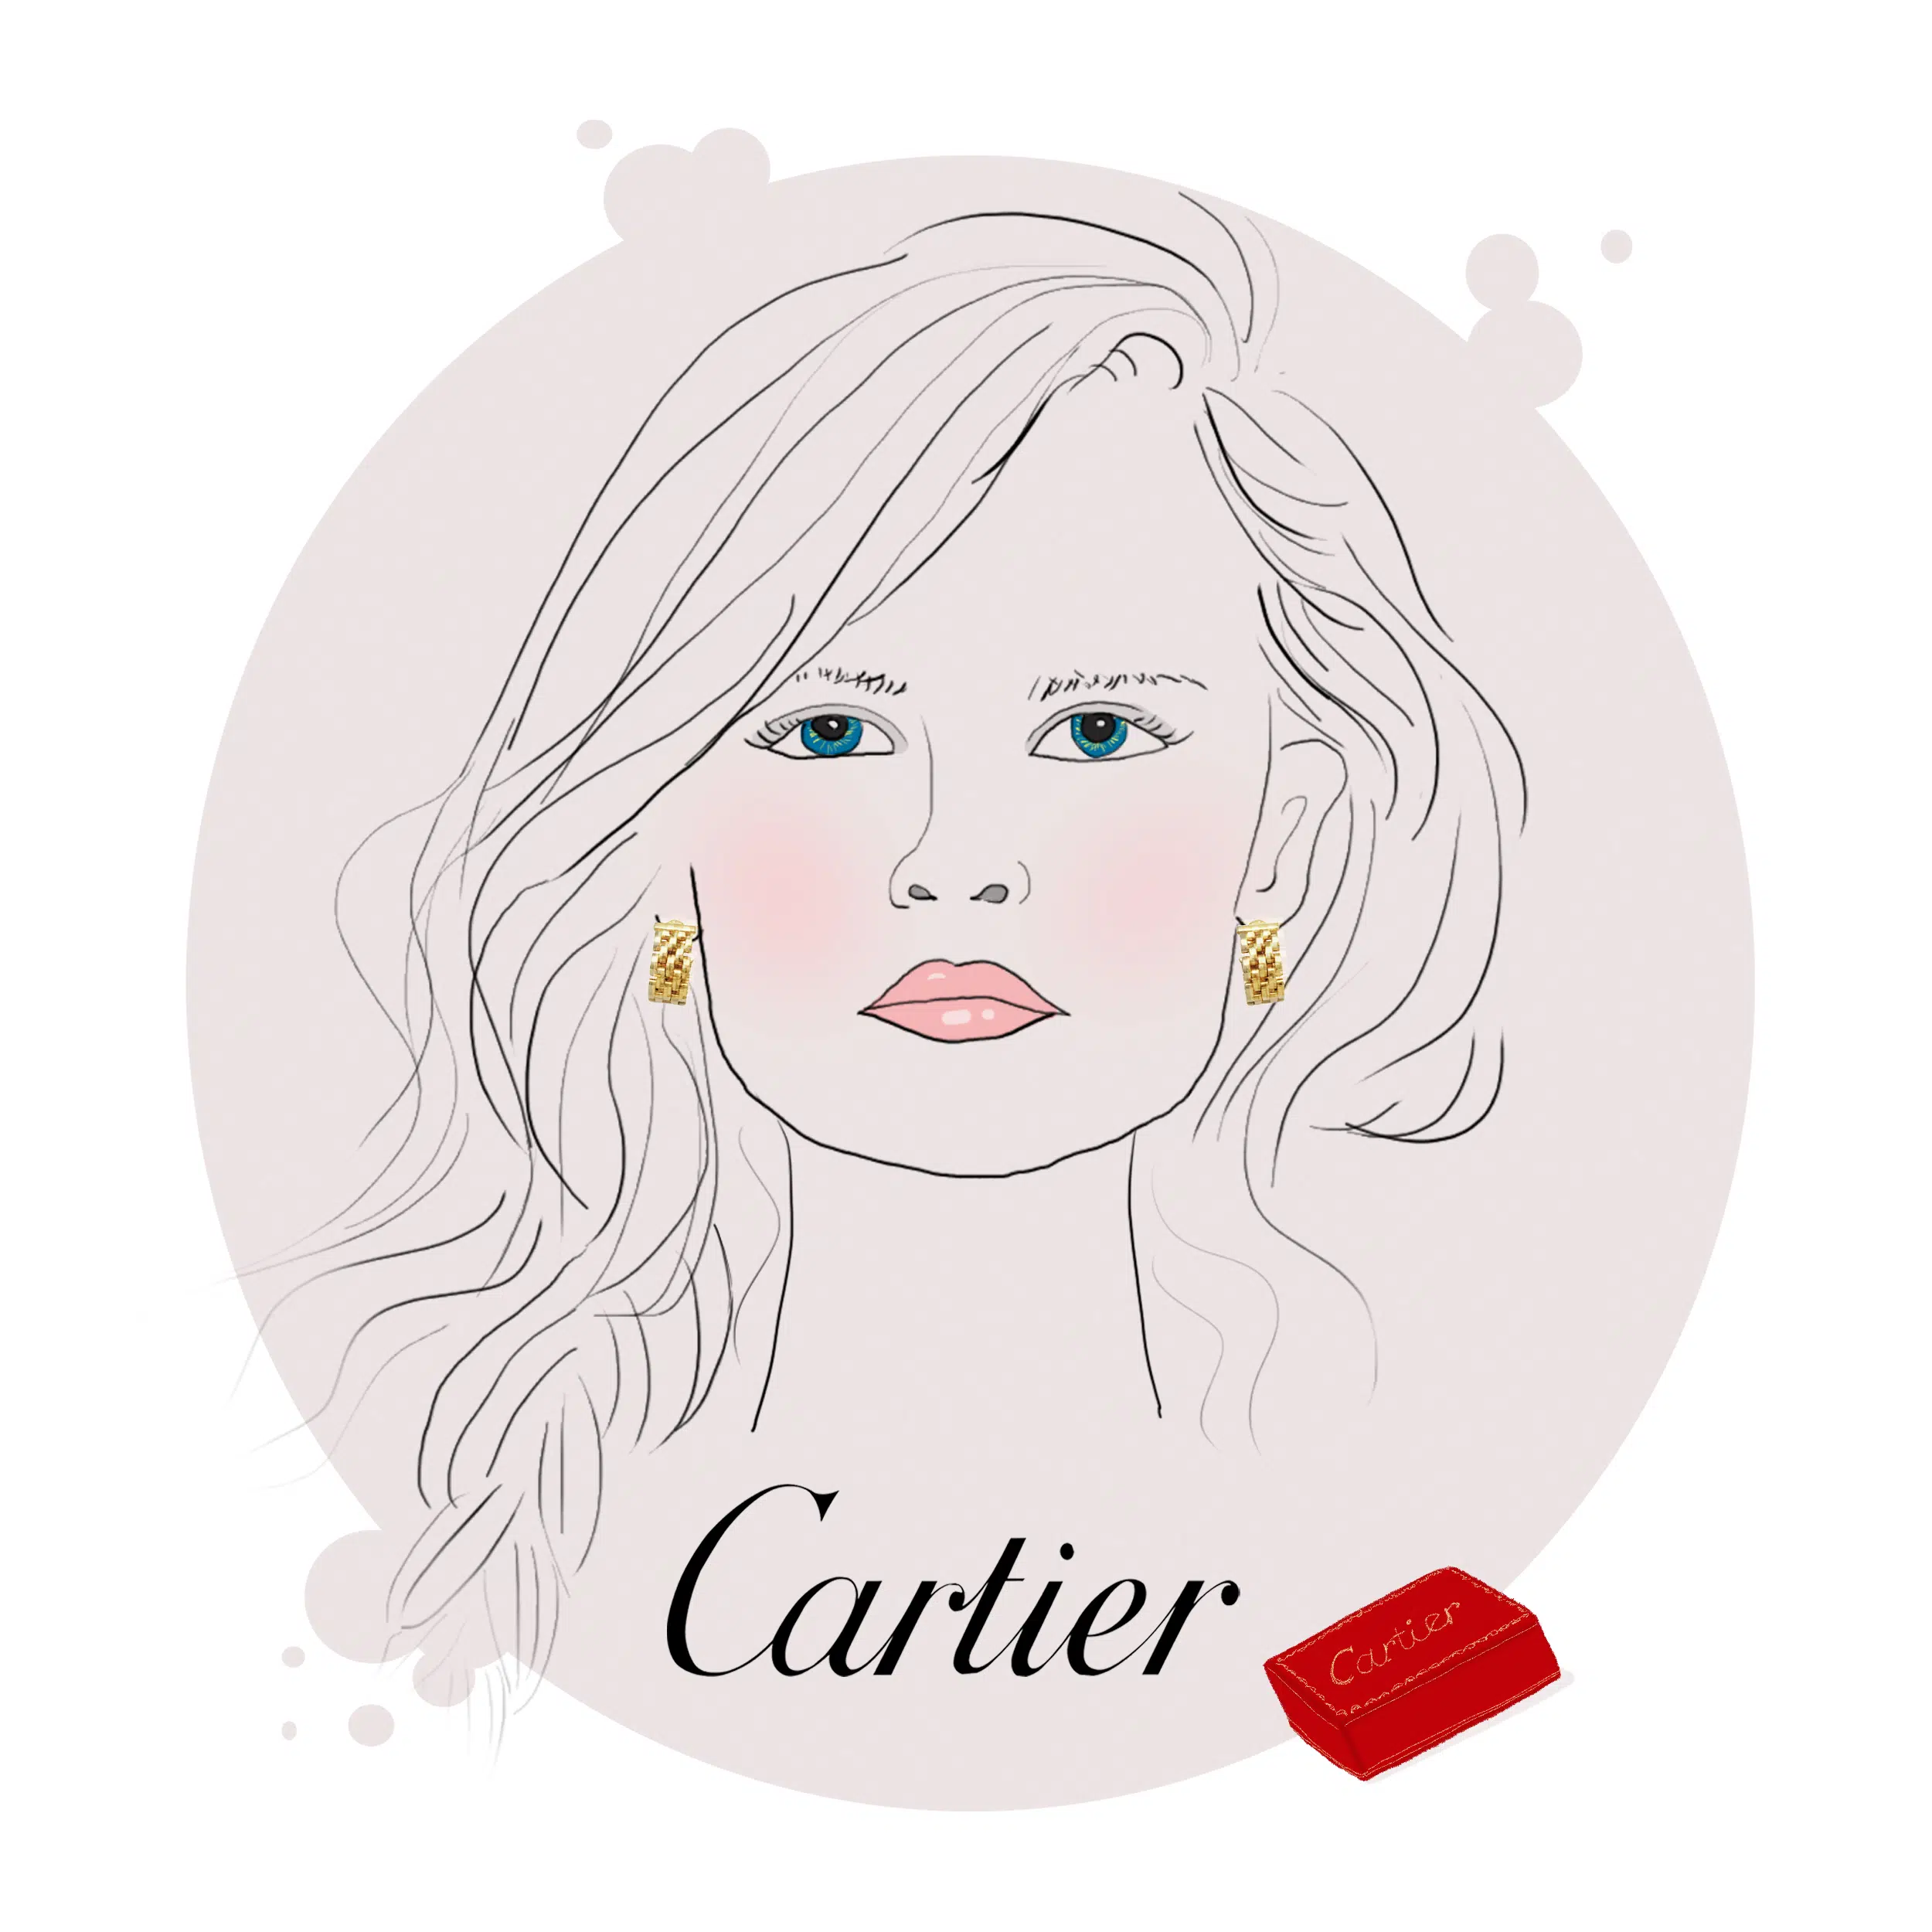 Cartier, joaillier